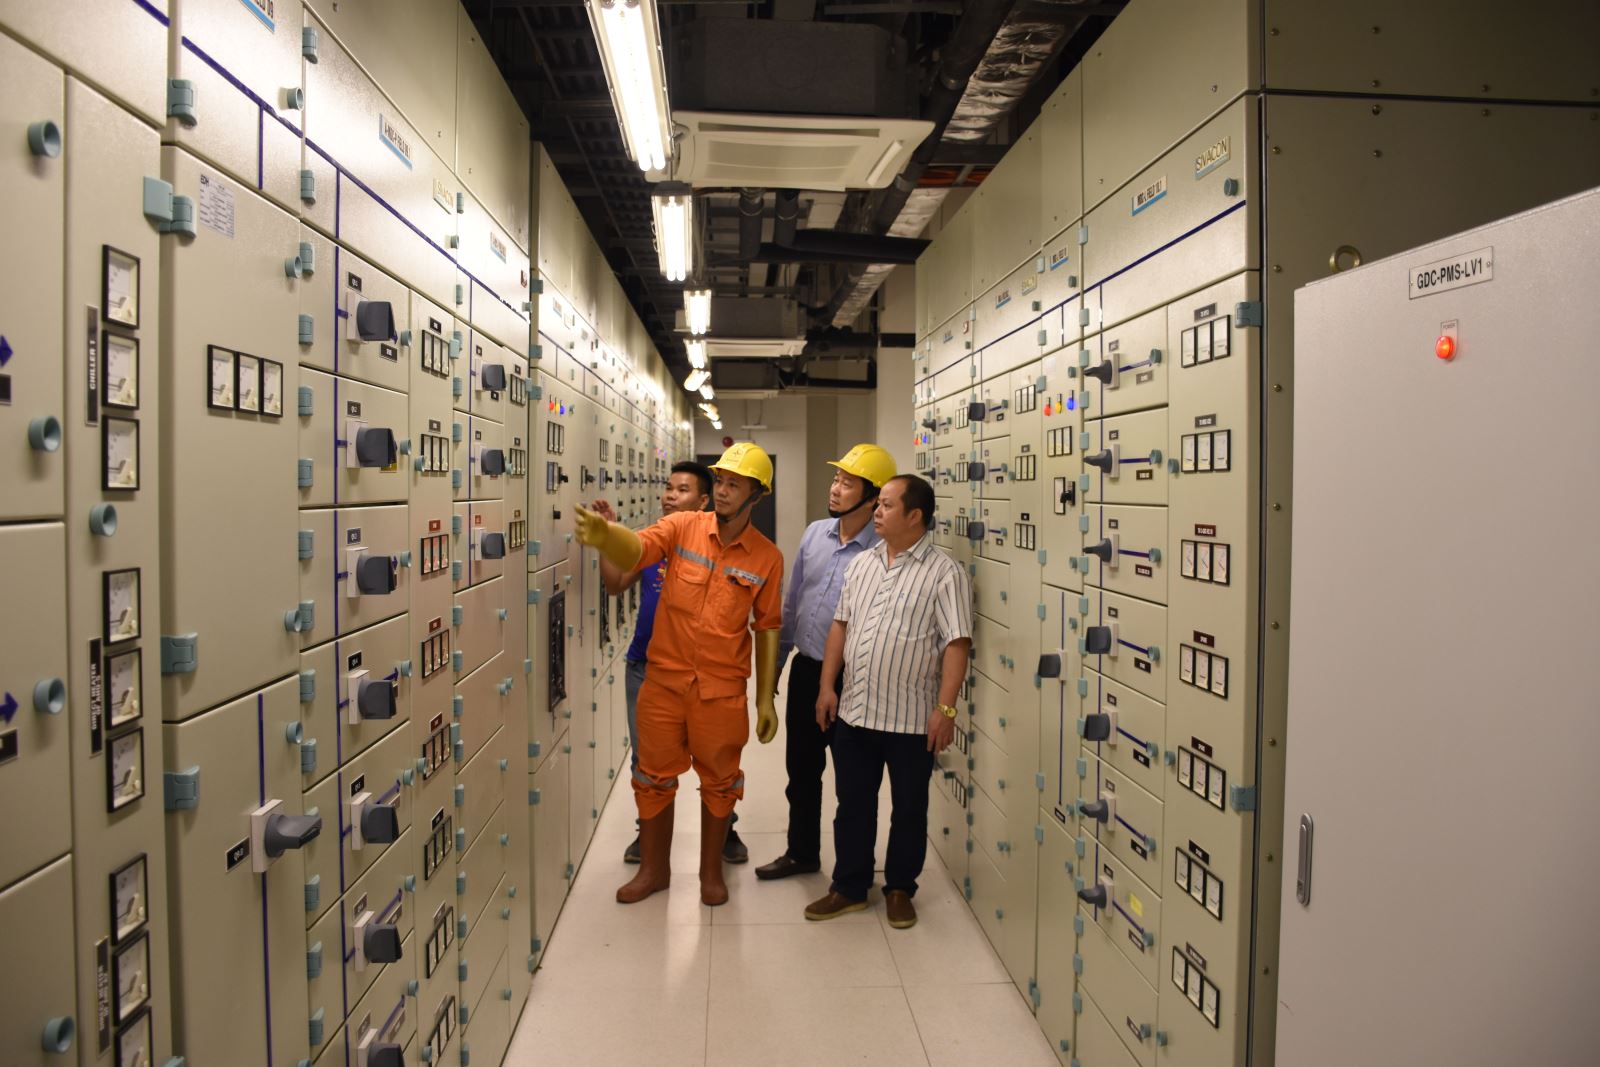 EVNHANOI phối hợp cùng ban quản lý Tòa nhà Quốc hội Việt Nam kiểm tra hệ thống tủ điều khiển